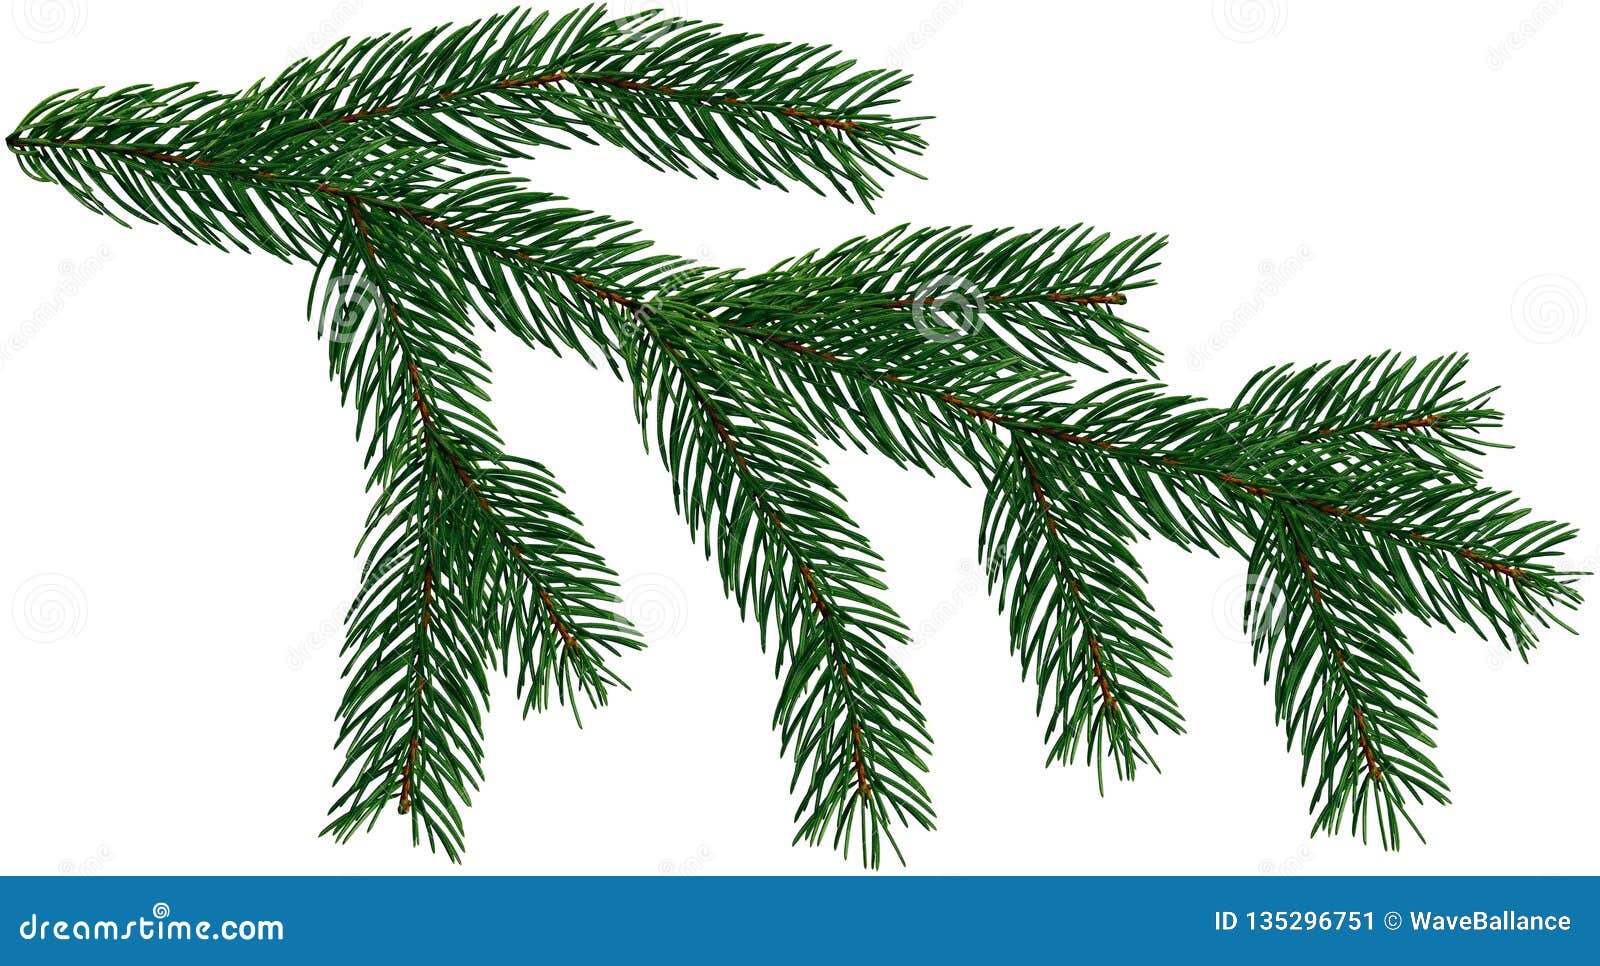 Cành cây thông lớn cho cây Giáng sinh sẽ mang lại không gian ấm cúng và đầy lễ hội cho gia đình bạn. Hãy xem hình để tìm kiếm rẻ nhất và tốt nhất cho mùa Giáng sinh năm nay.